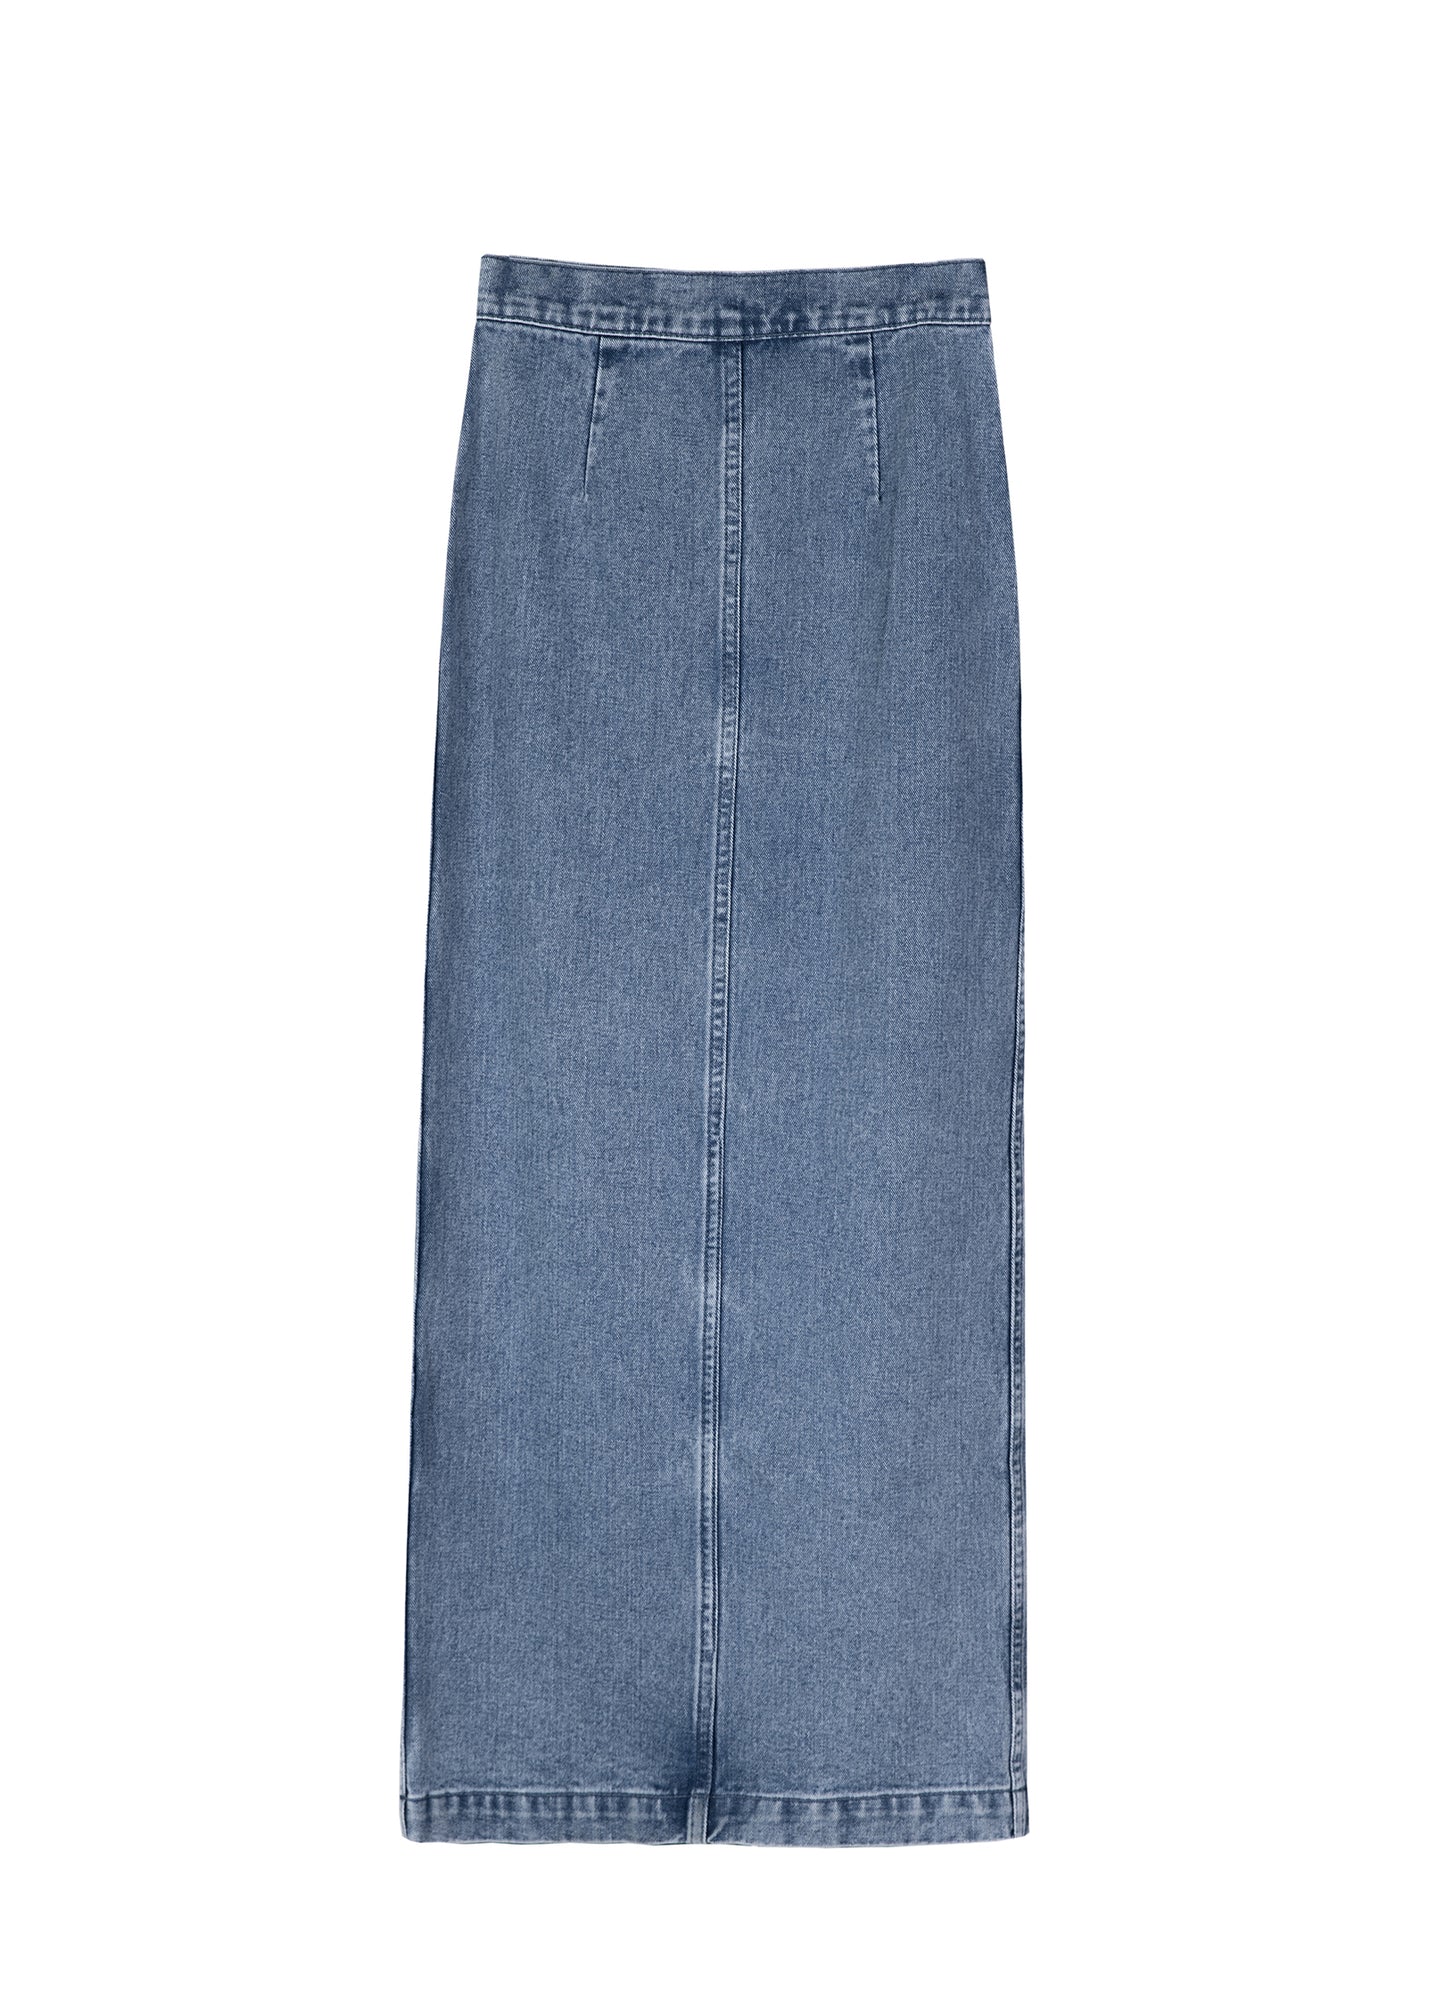 Full length Denim Skirt